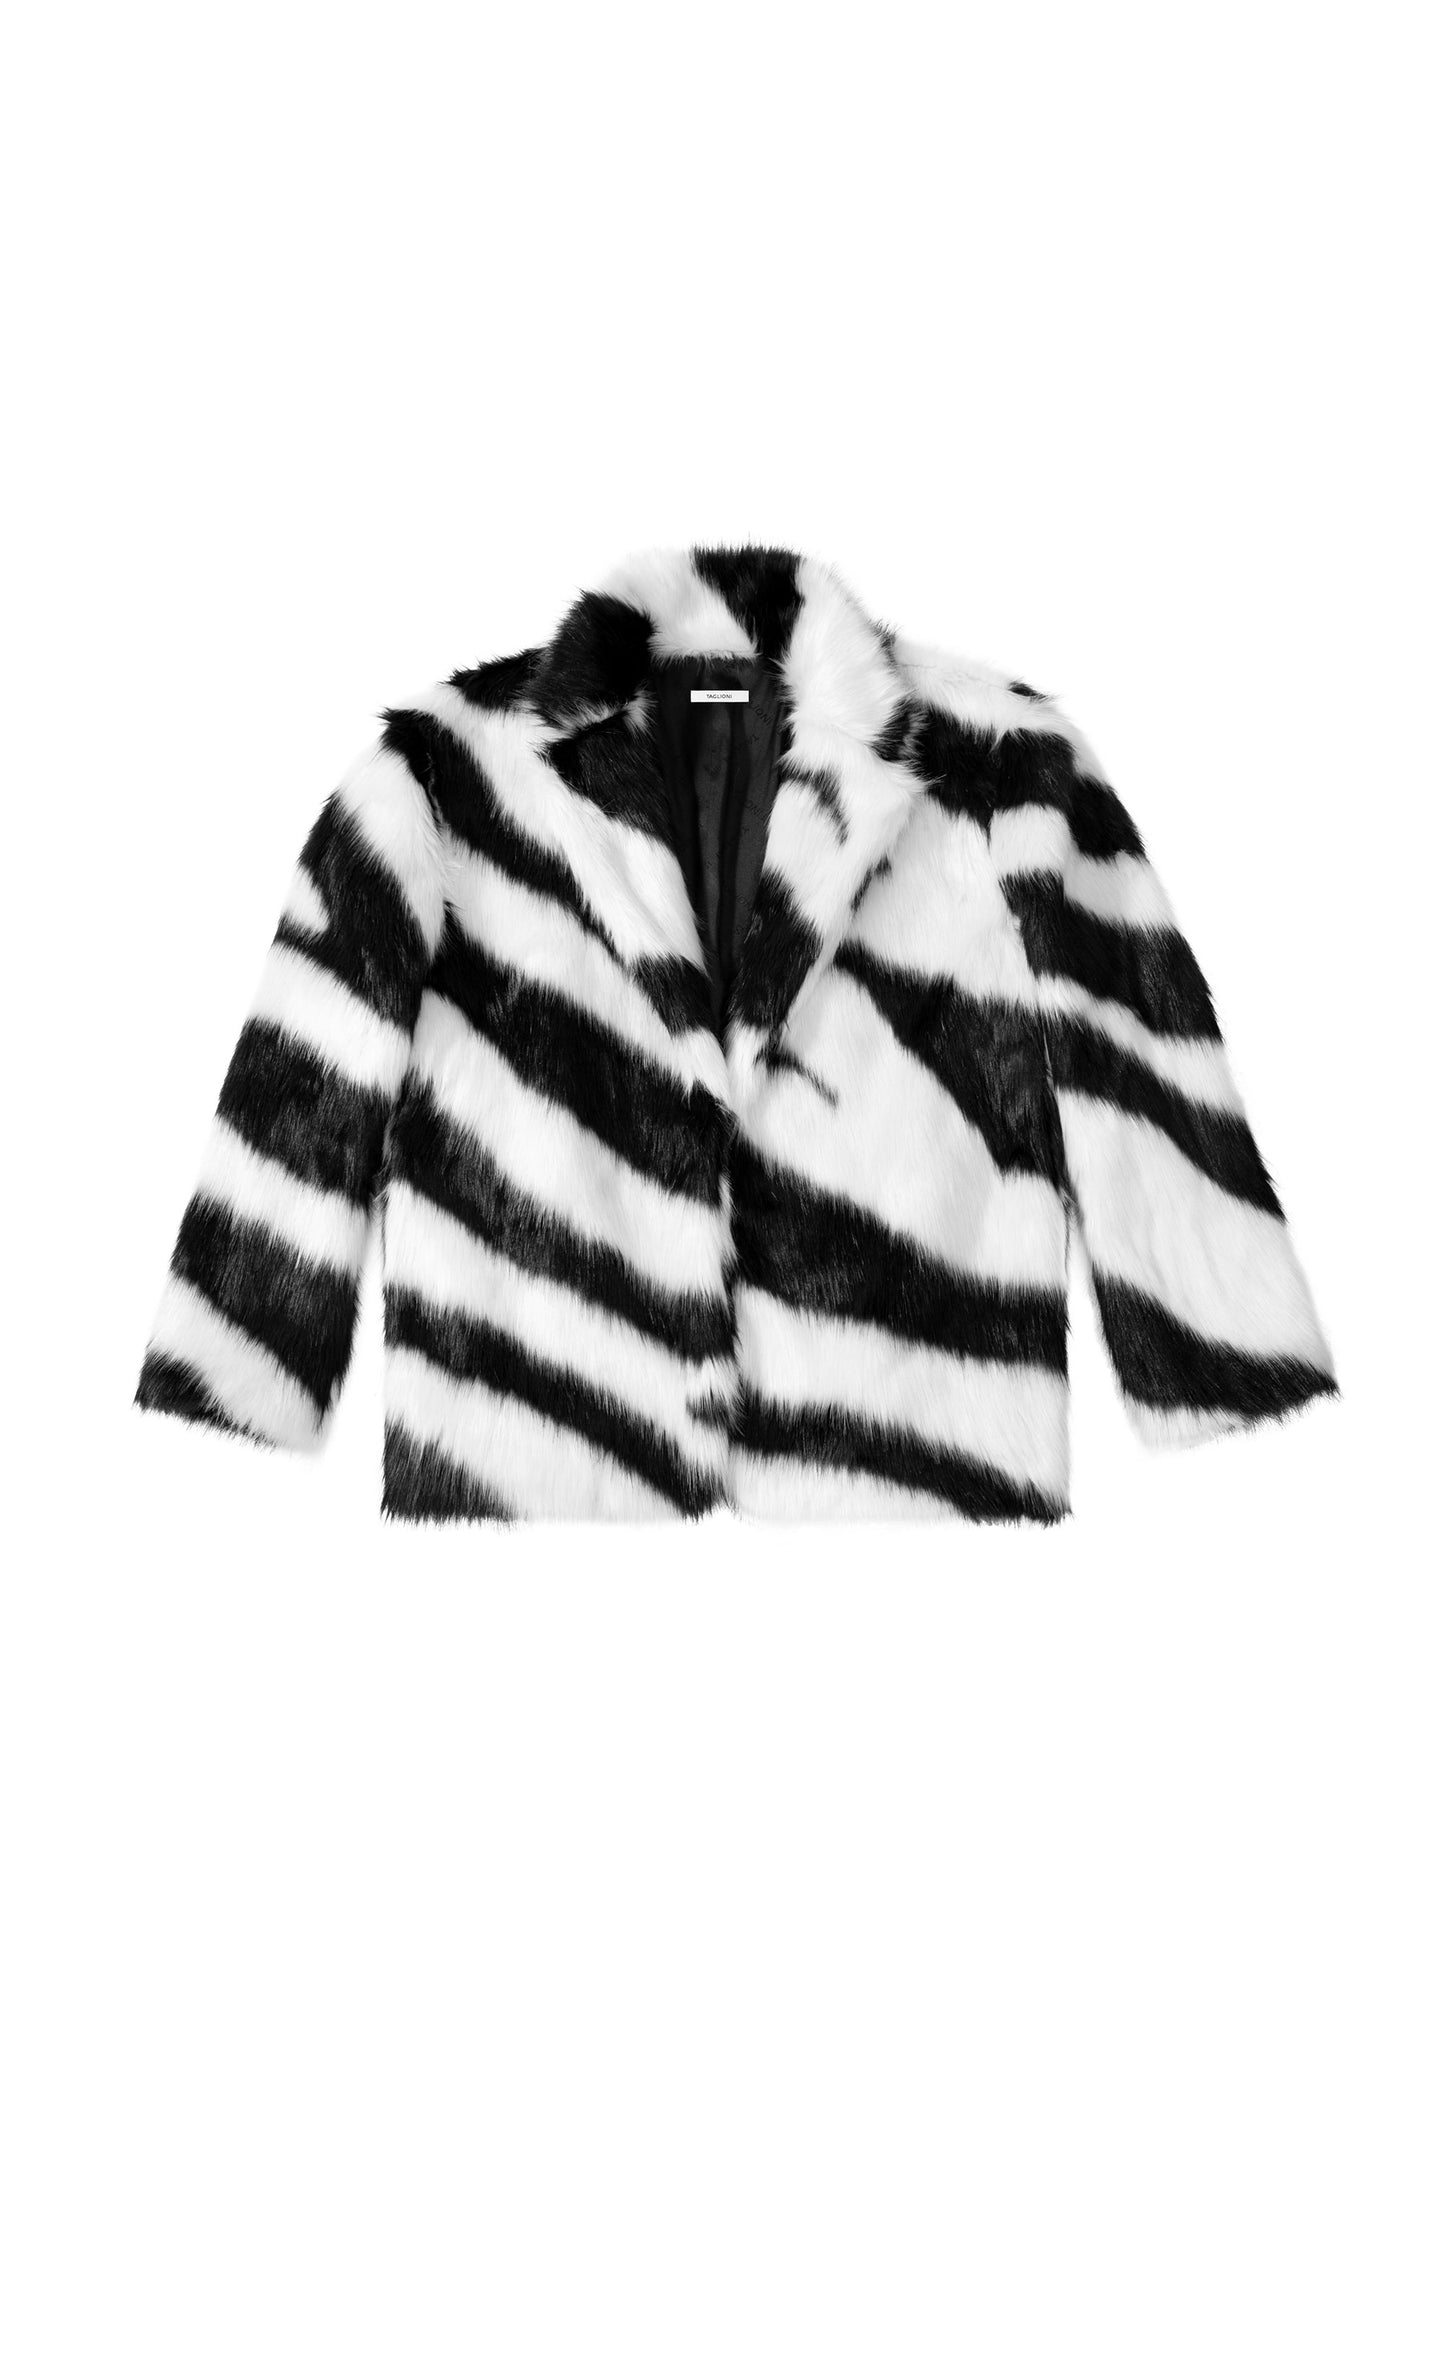 Peacoat in Fur in Black & White Short